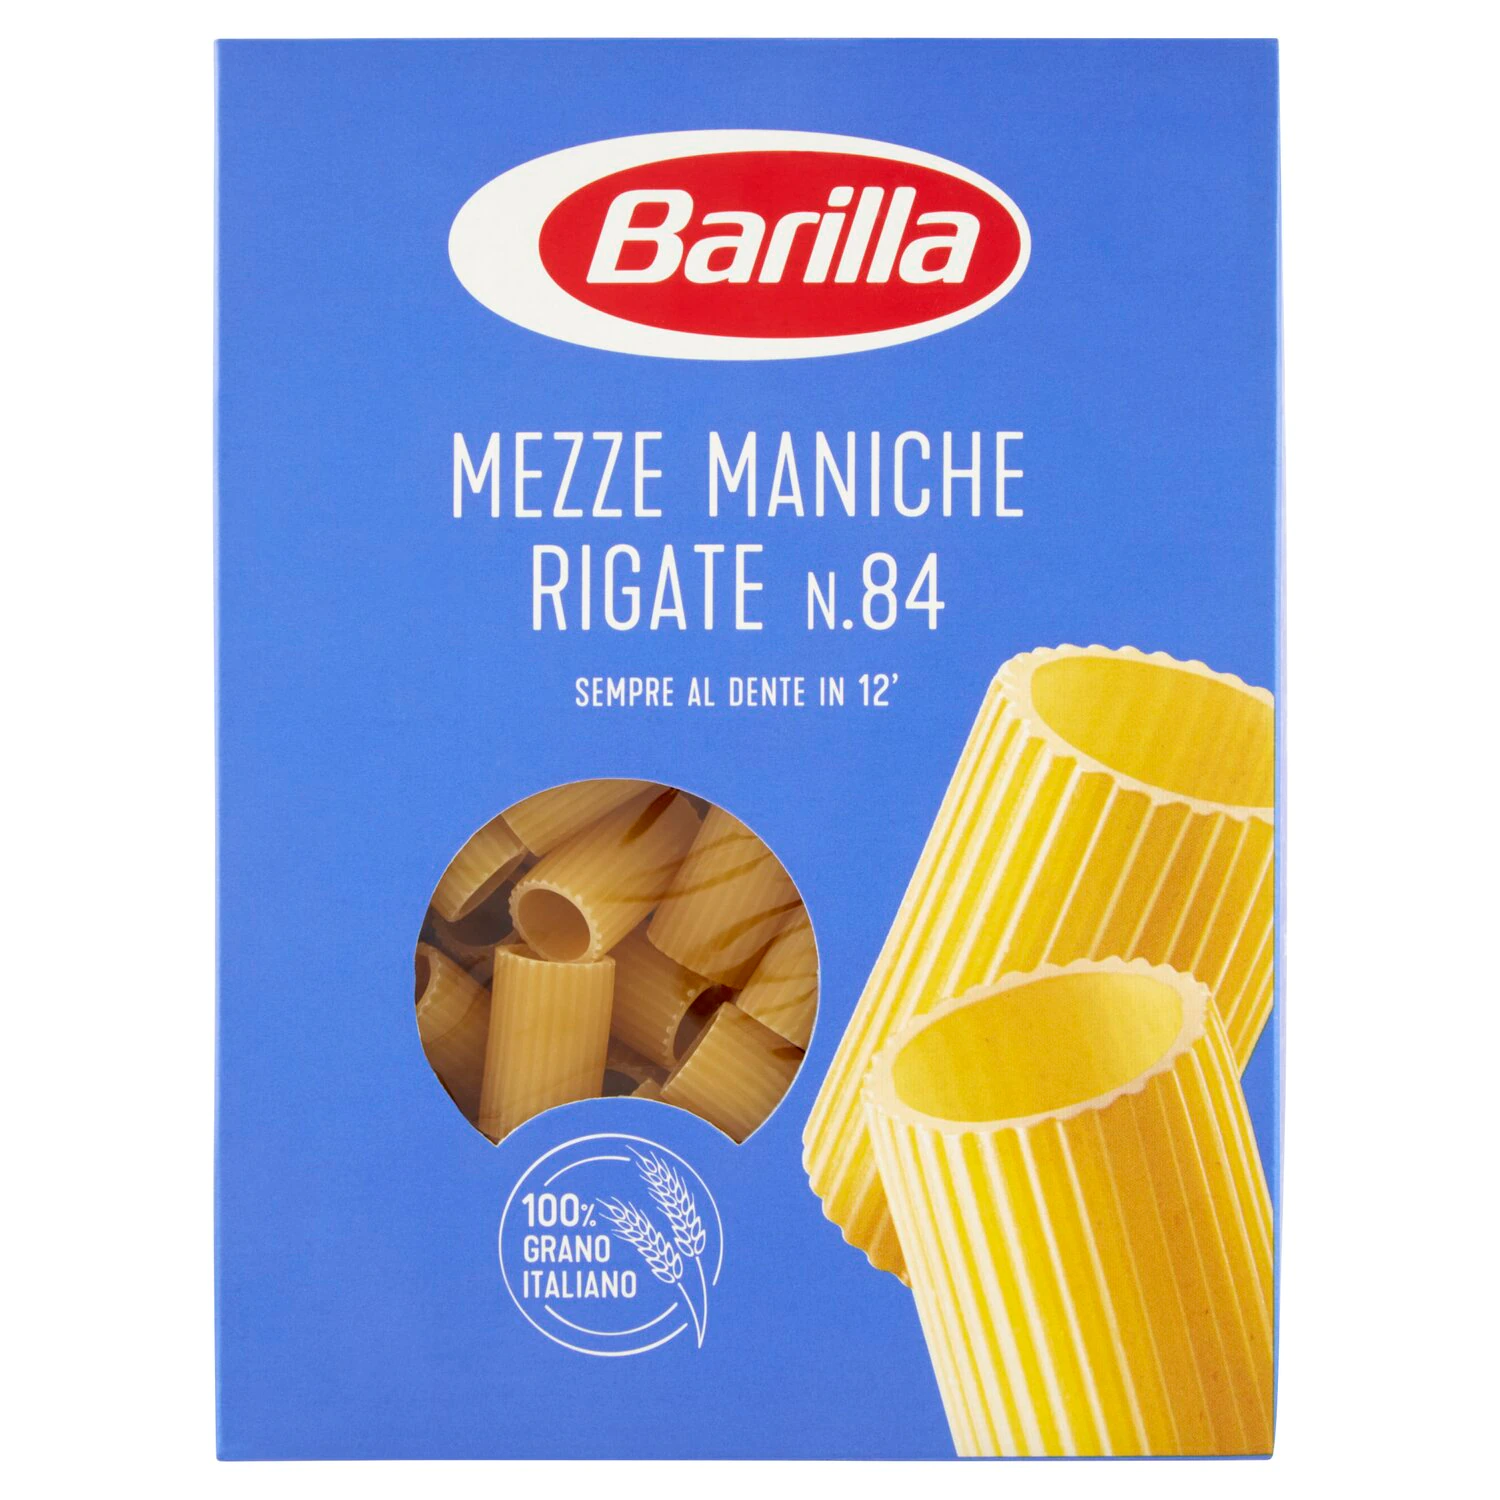 Paste Barilla Mezze Maniche Rigate n.84